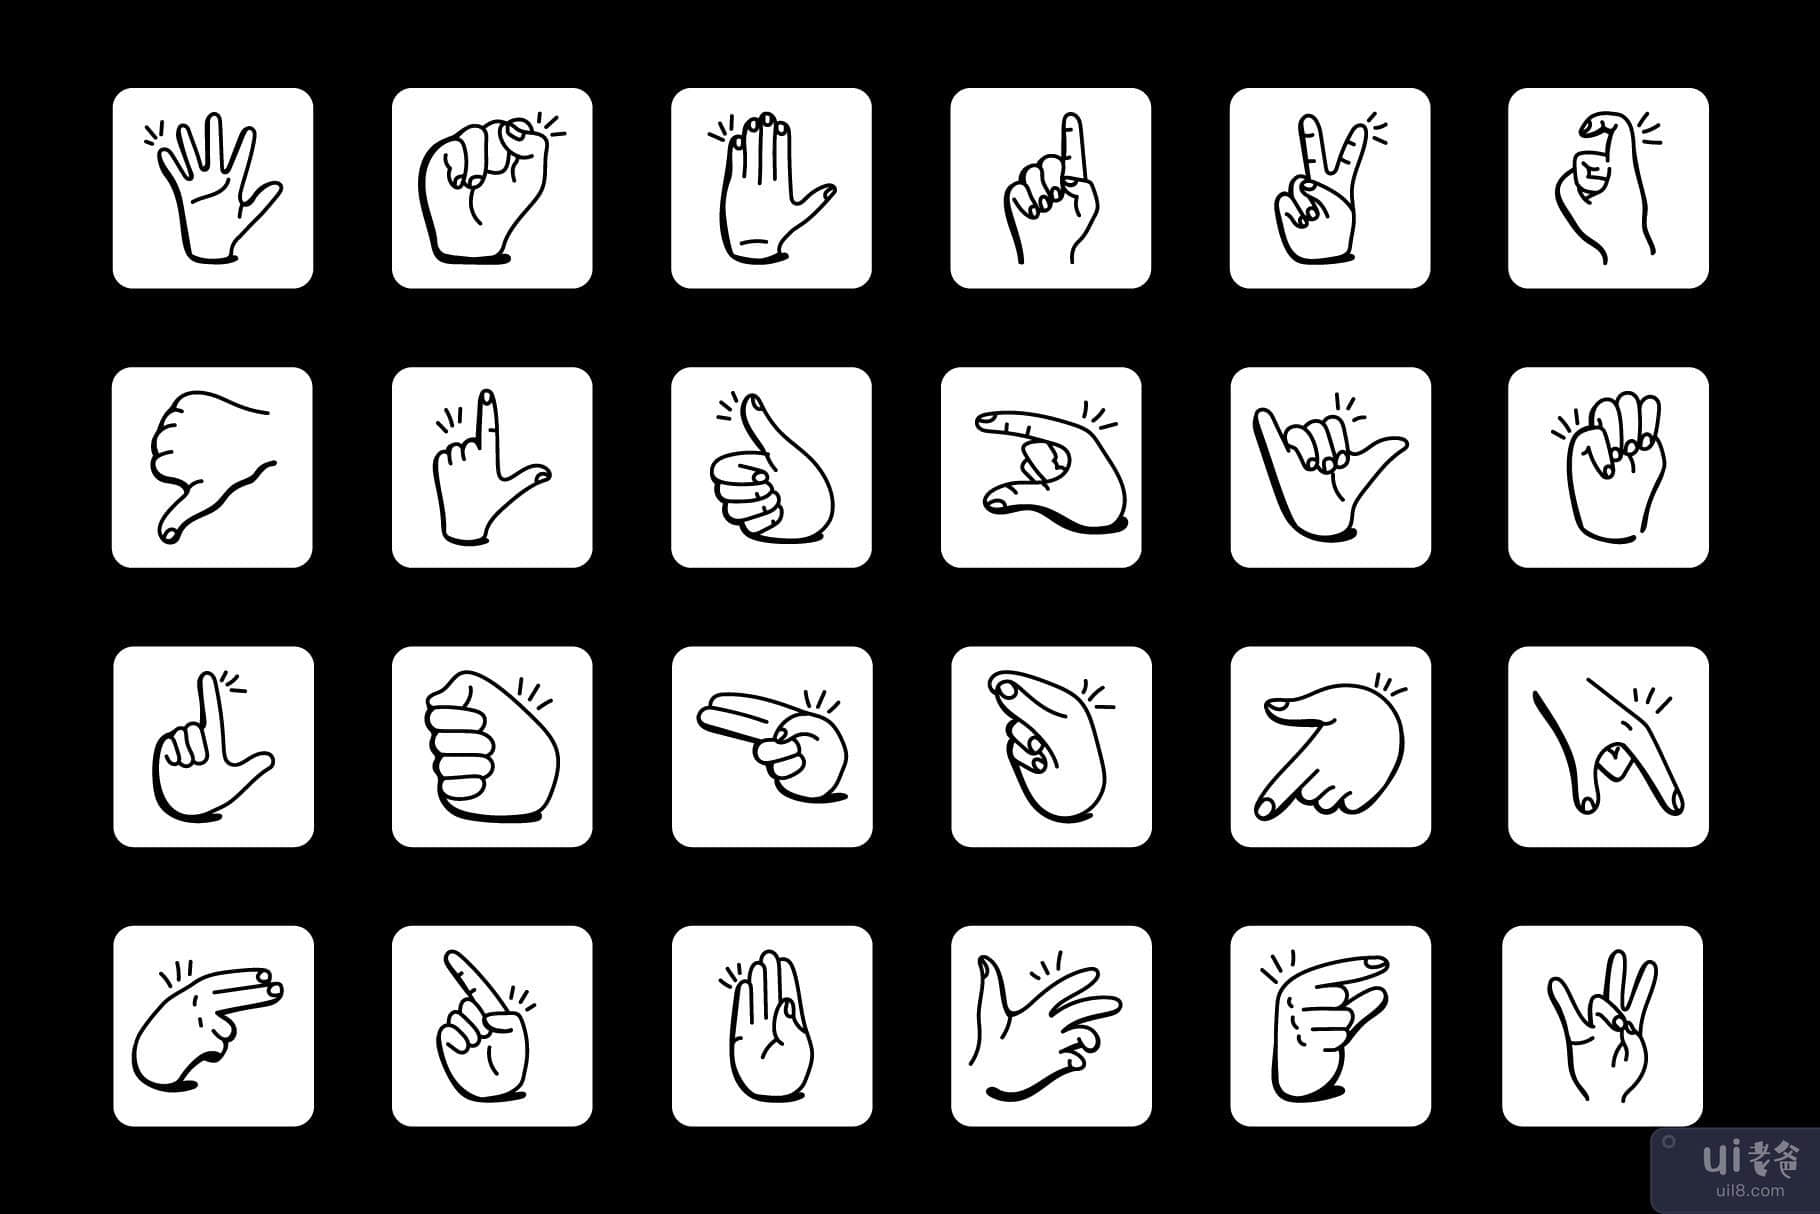 涂鸦手语图标的集合(Collection of Doodle Sign Language Icons)插图4